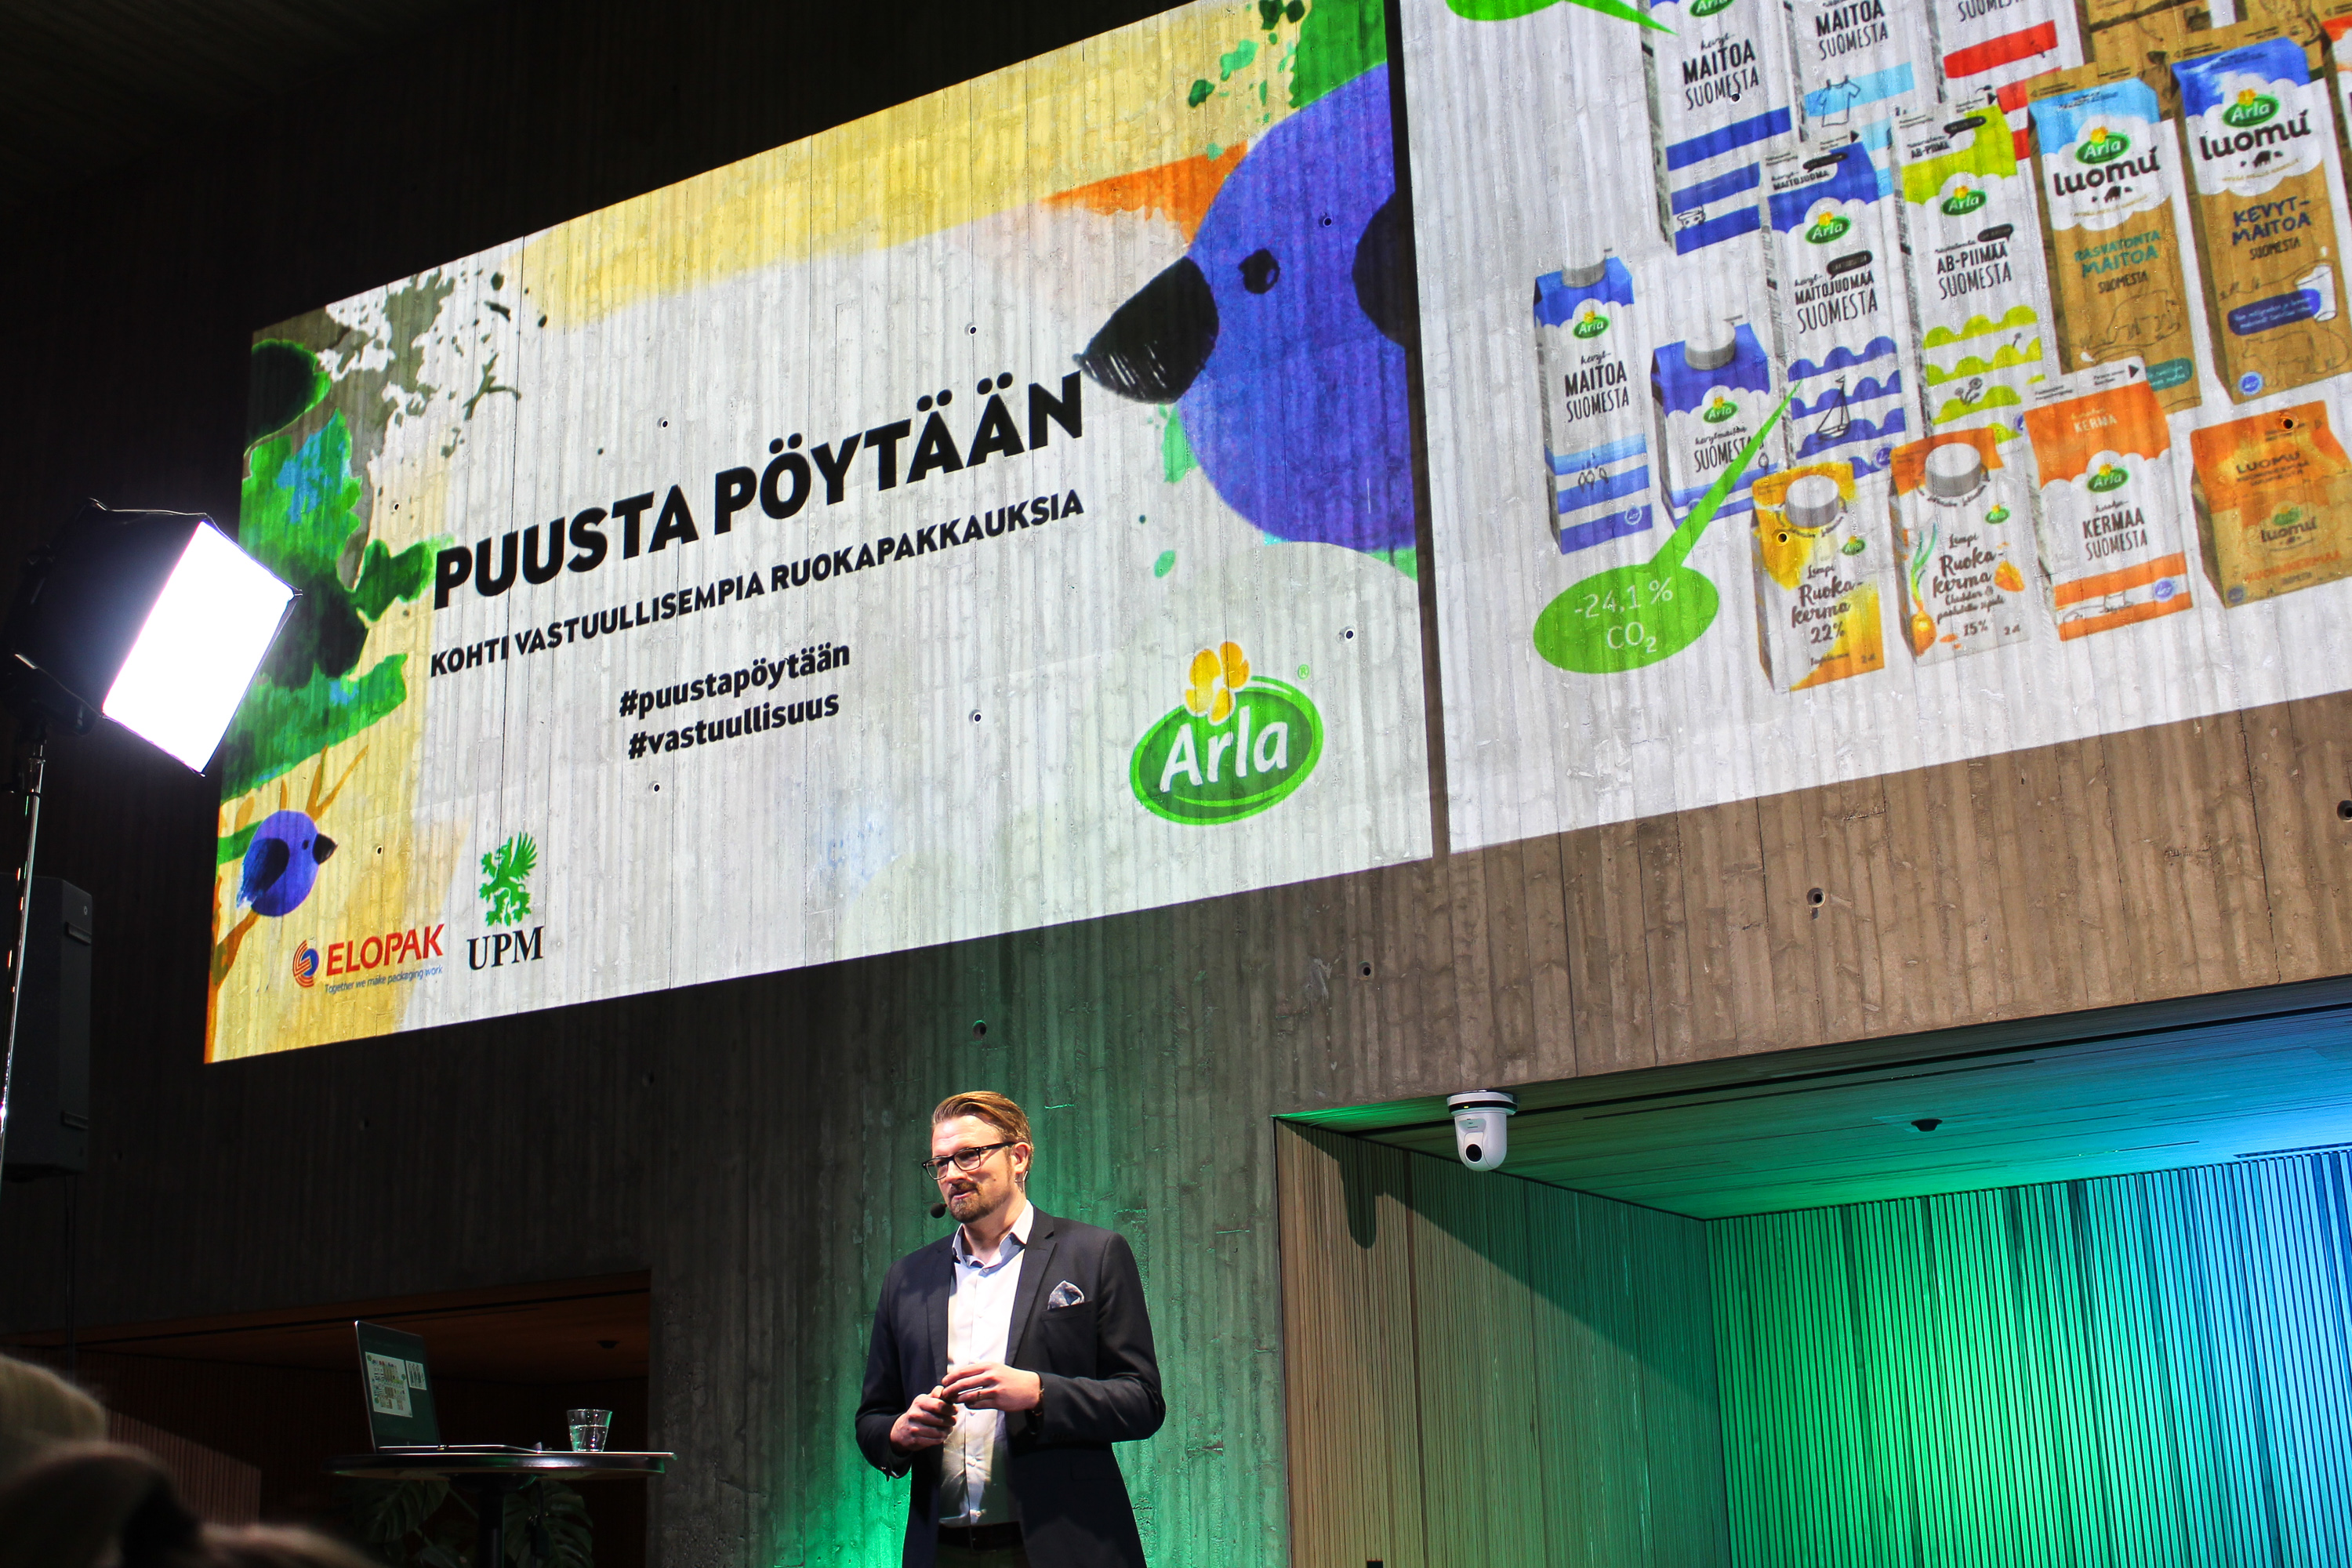 UPM Biofuels_Arla_Puusta pöytään_Antti Airaksinen_IMG_0116.jpg